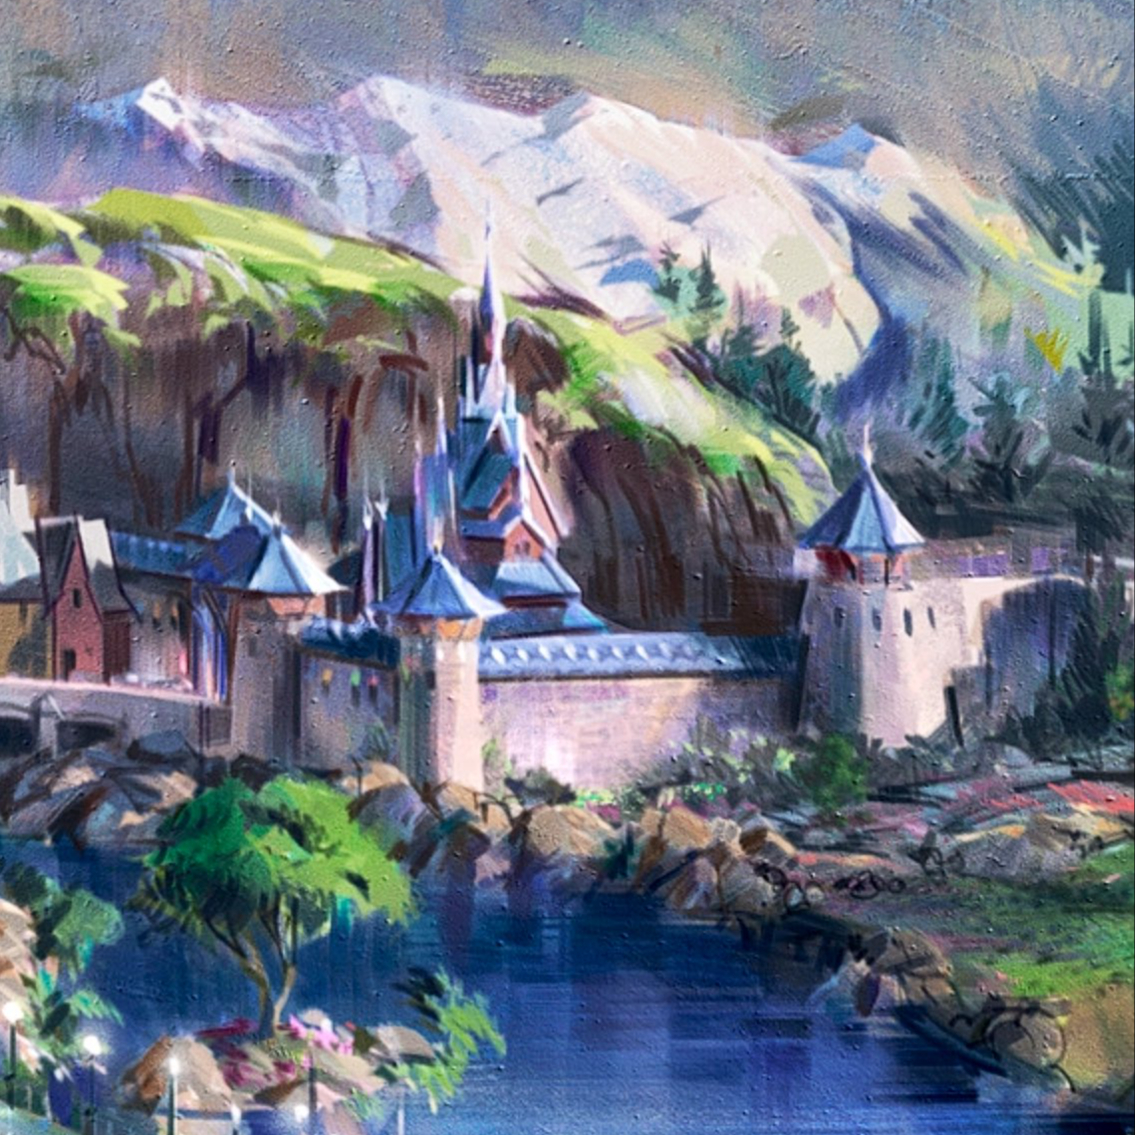 Het eerste torentje van het kasteel van Arendelle is geplaatst in Frozen Land in Disneyland Paris 😍 Bekijk het nieuwe gebied in het Studios Park 👉 discoverthemagic.nl/disneyland-par…

📷 DLP Report